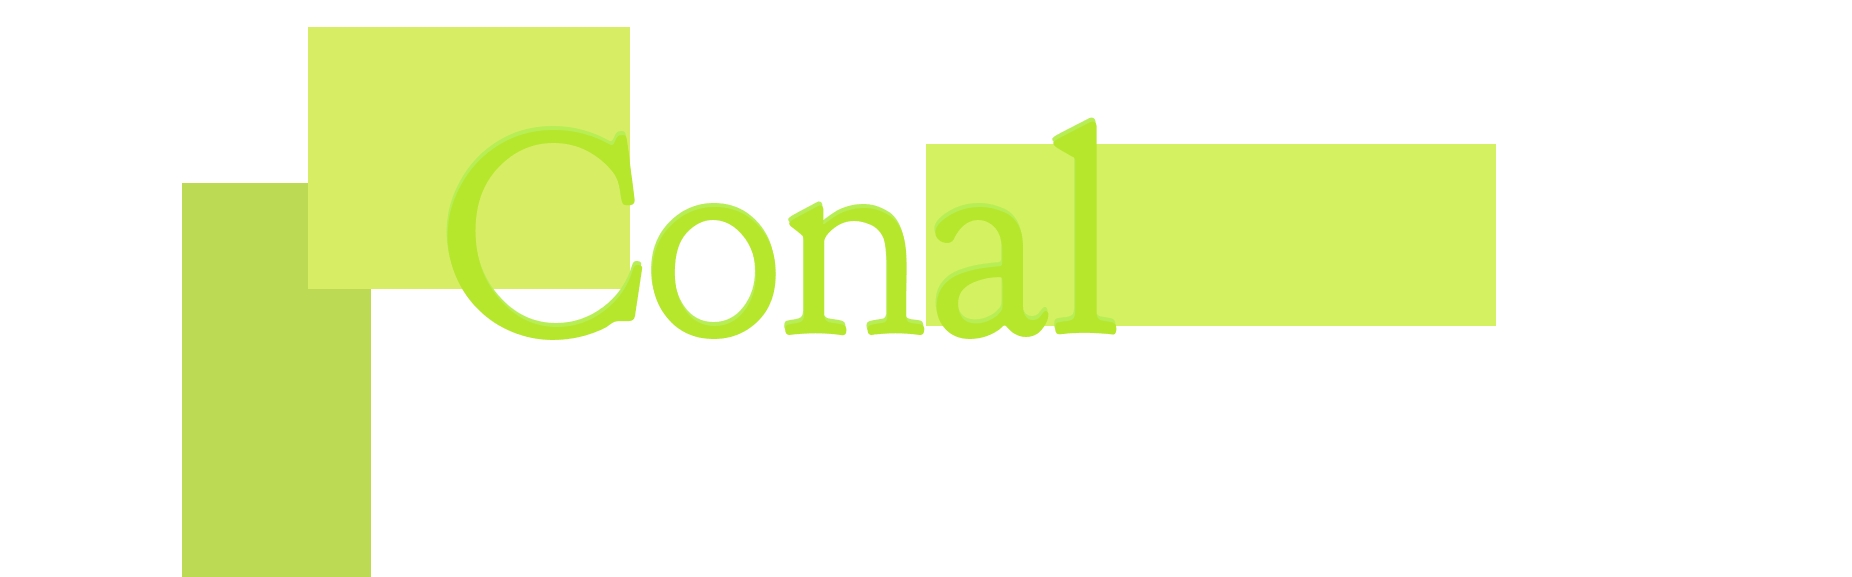 logo Conal